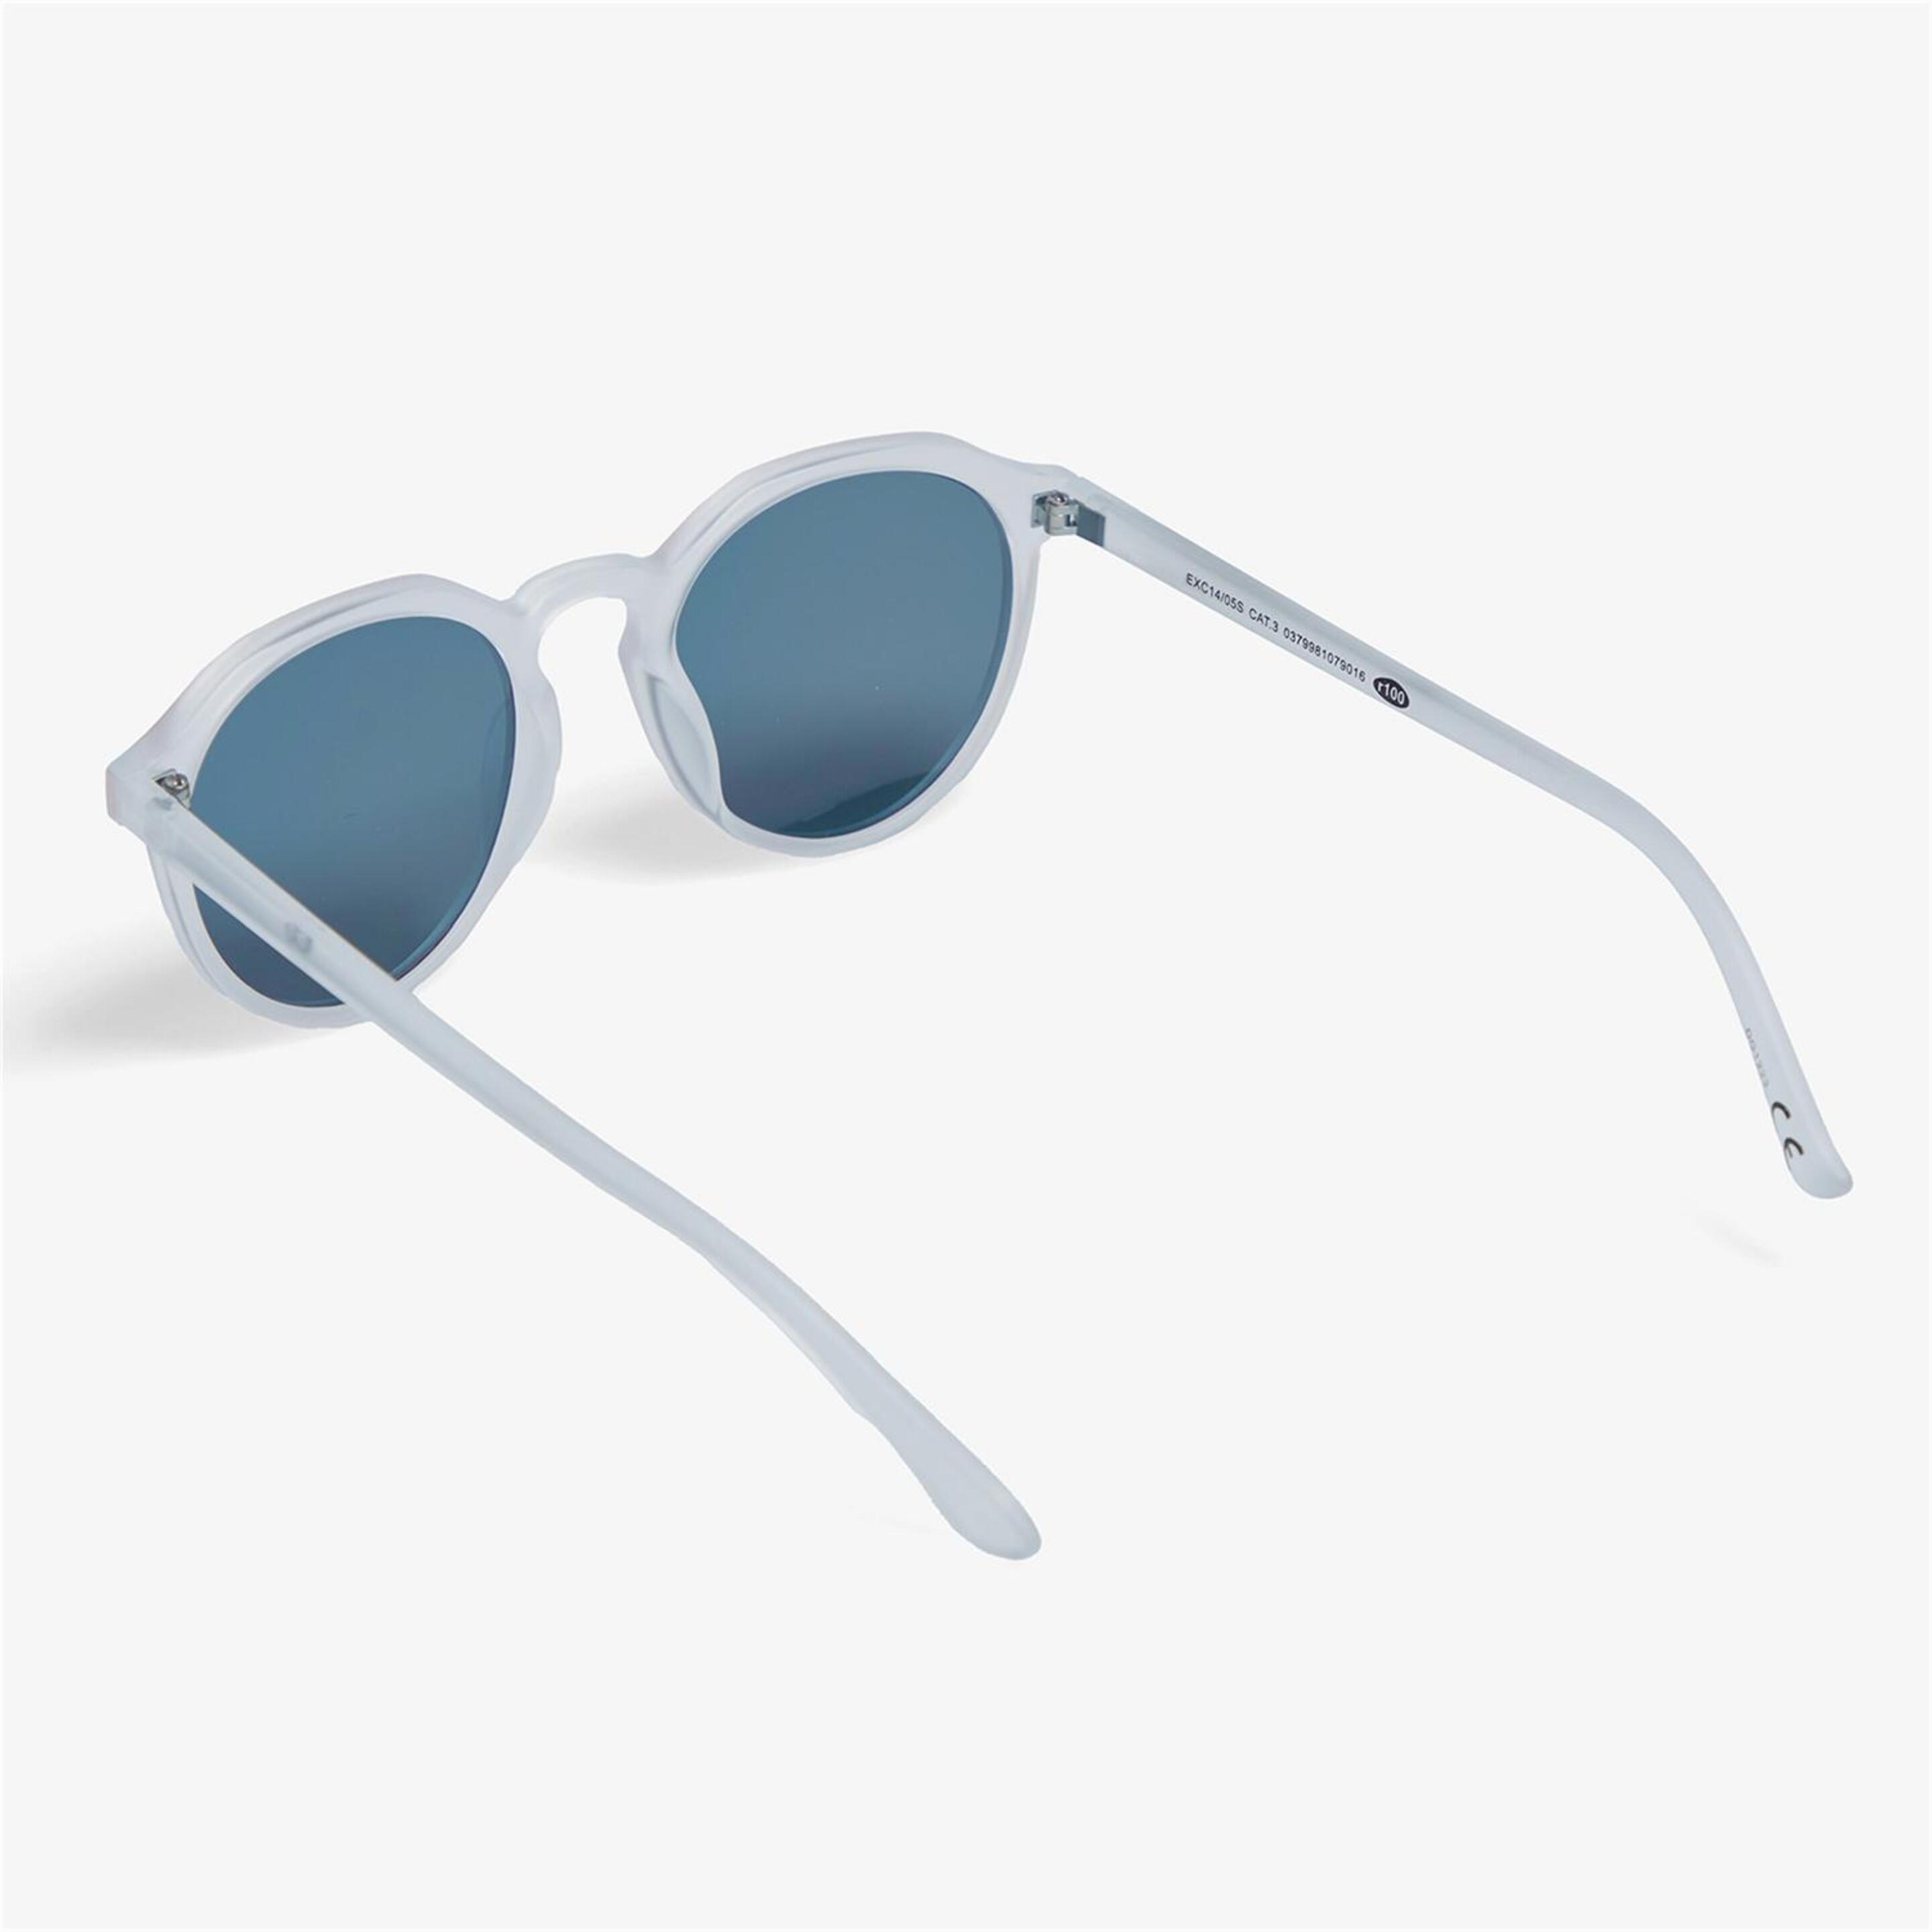 Gafas Silver - Blanco - Gafas Sol Unisex